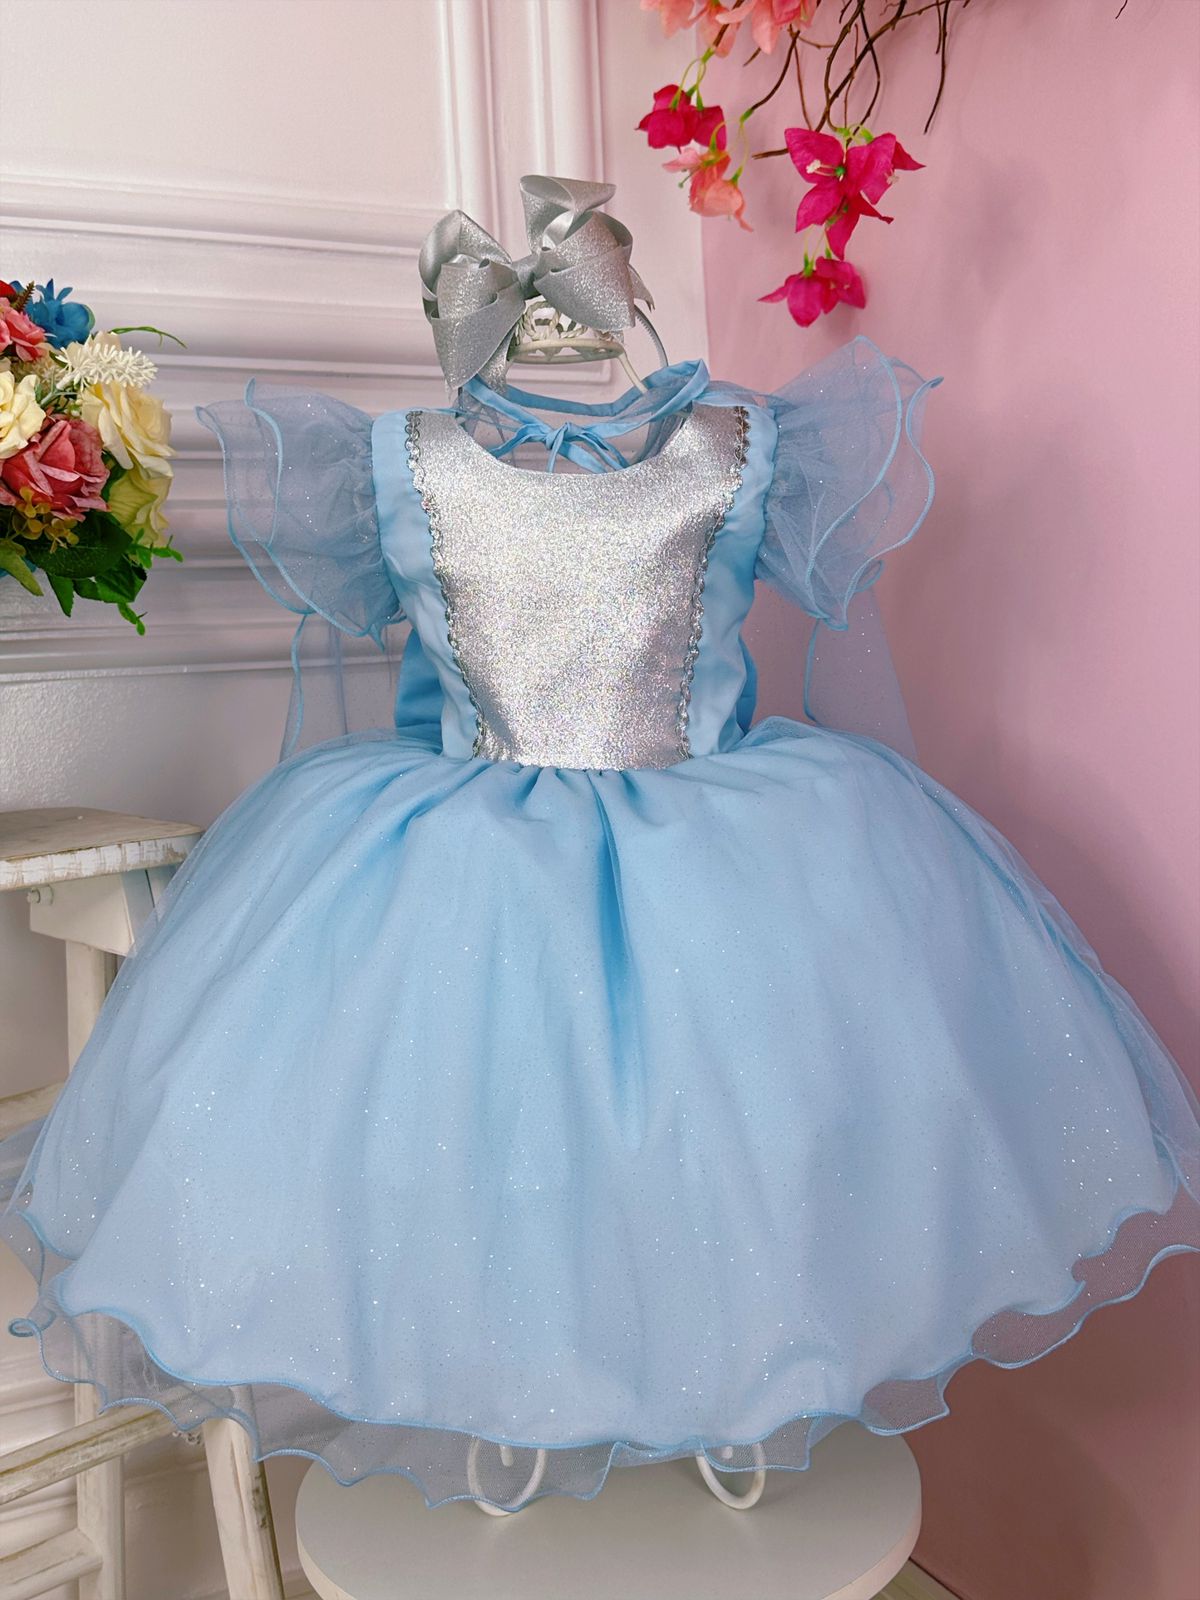 Vestido Infantil Frozen Anna e Elsa Azul C/ Glitter e Capa